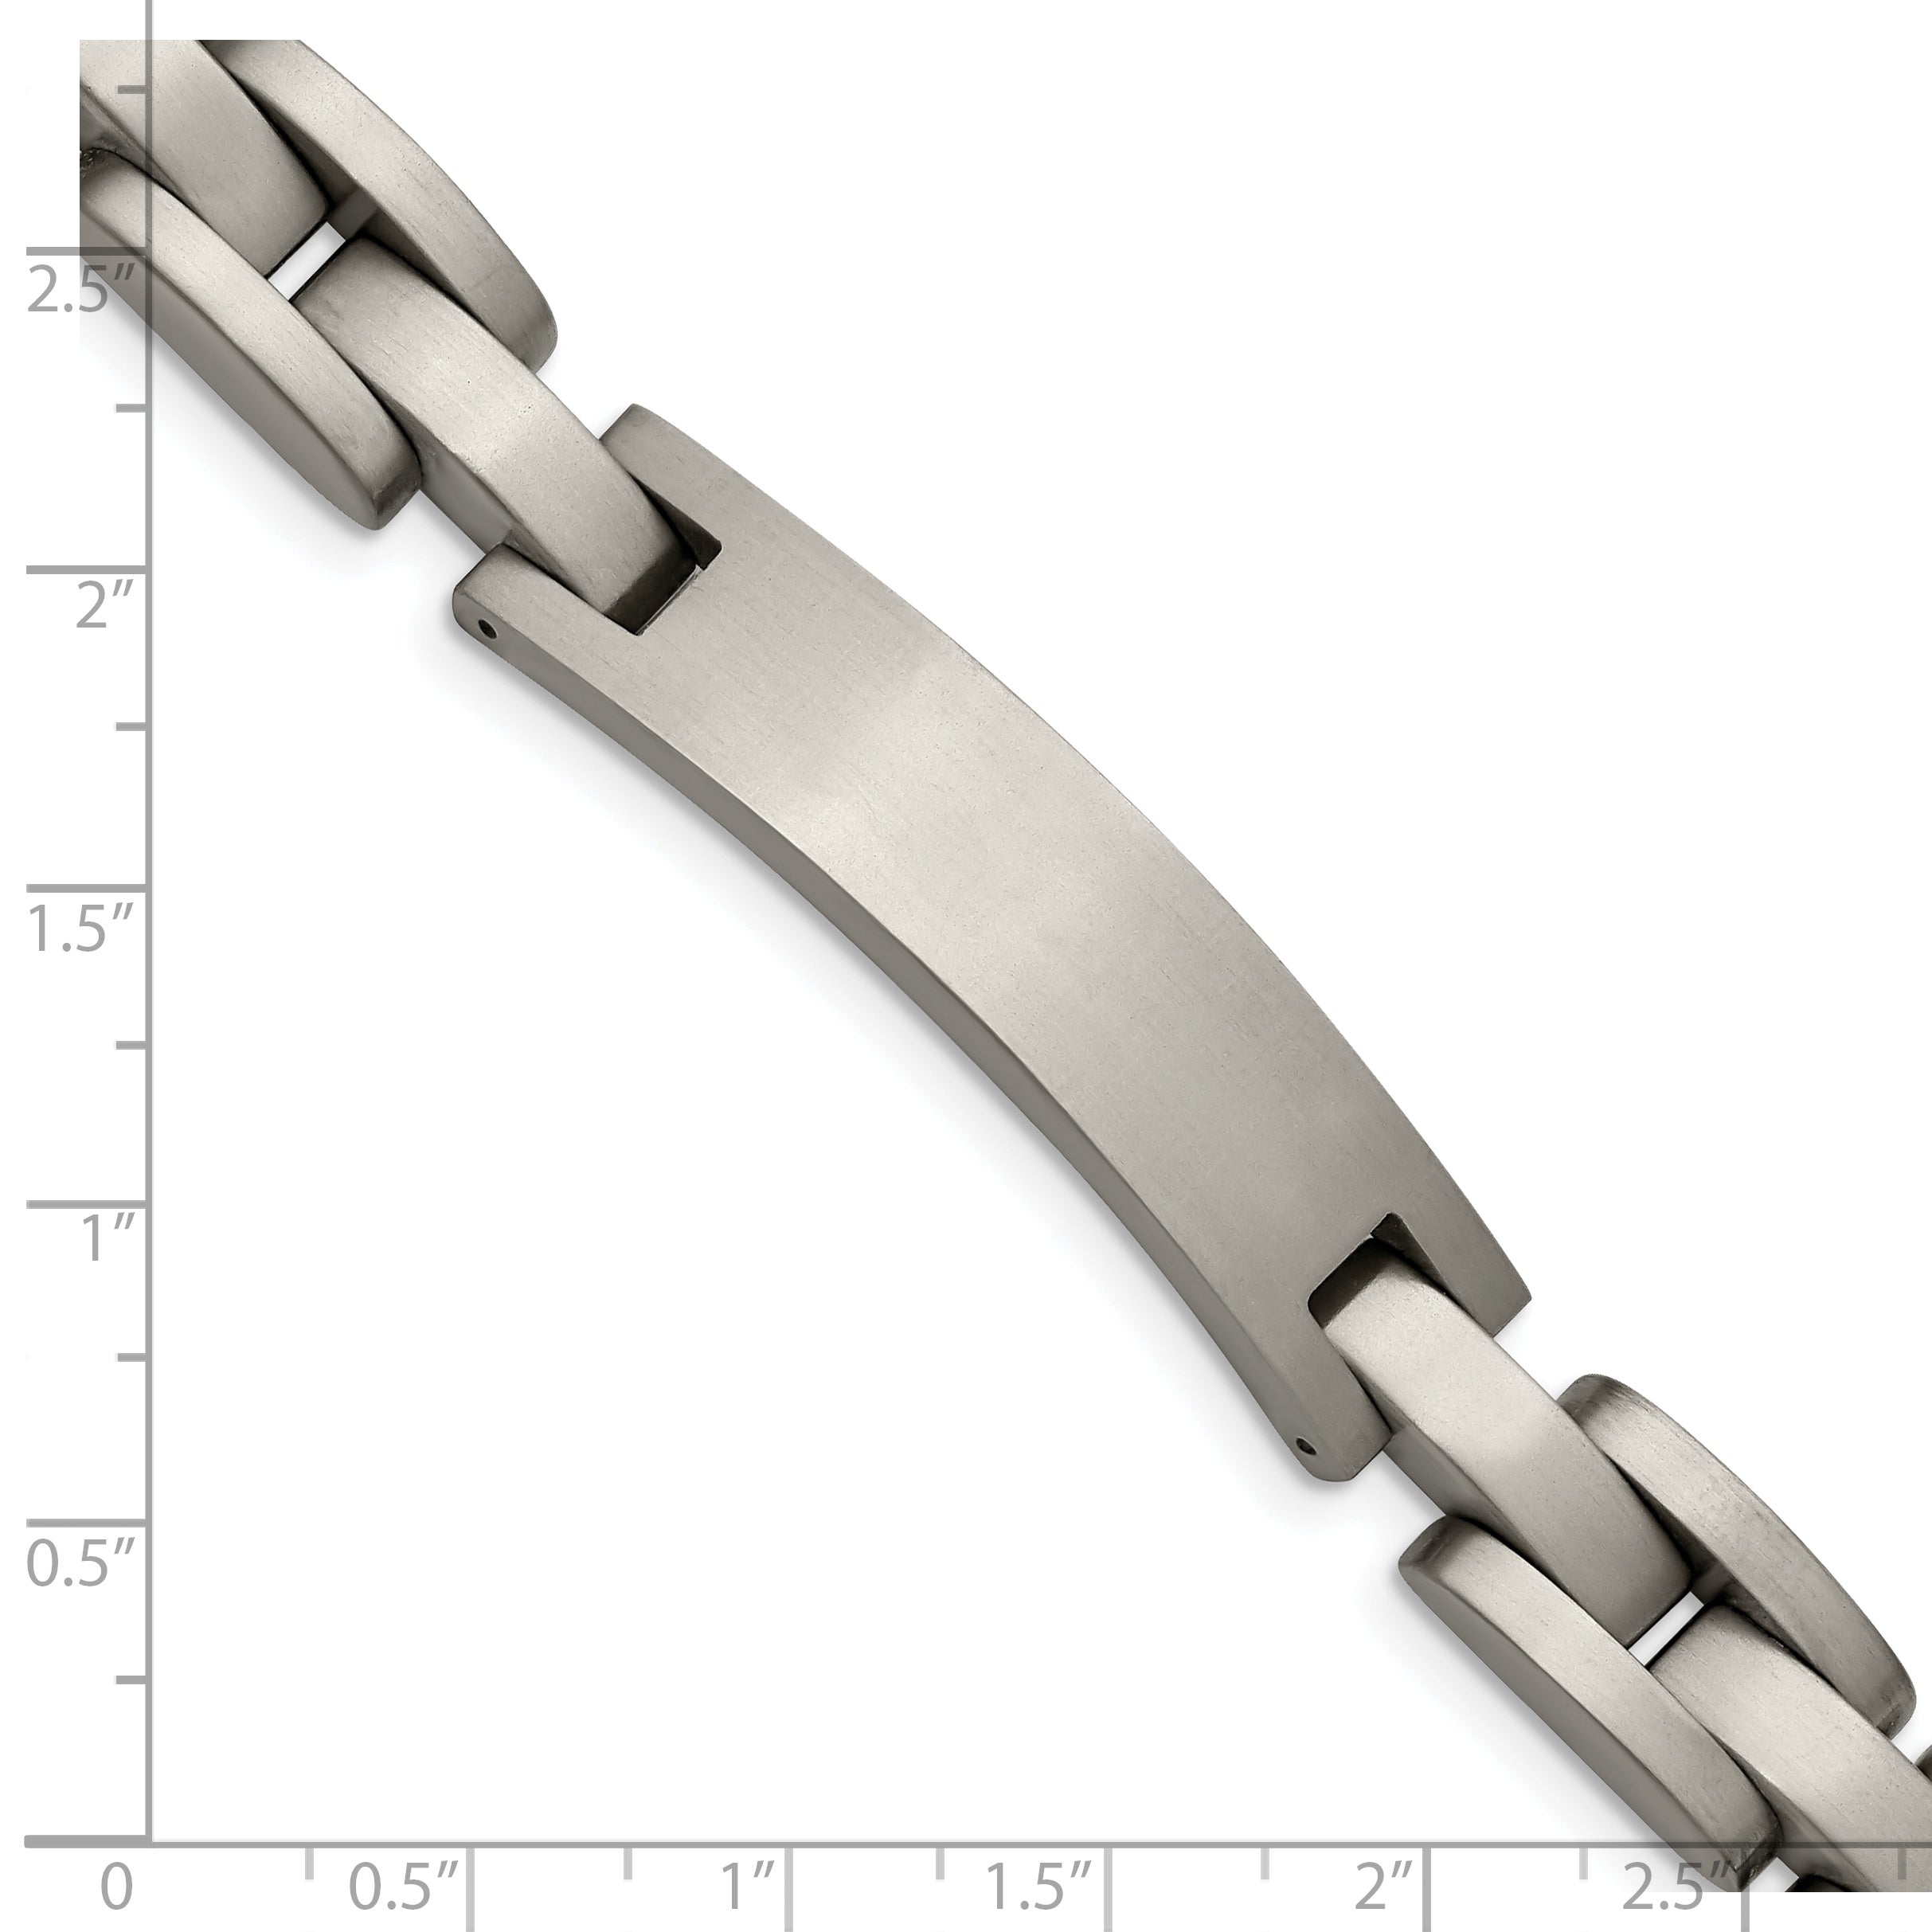 Chise Titanium Brushed 8.75 inch ID Bracelet